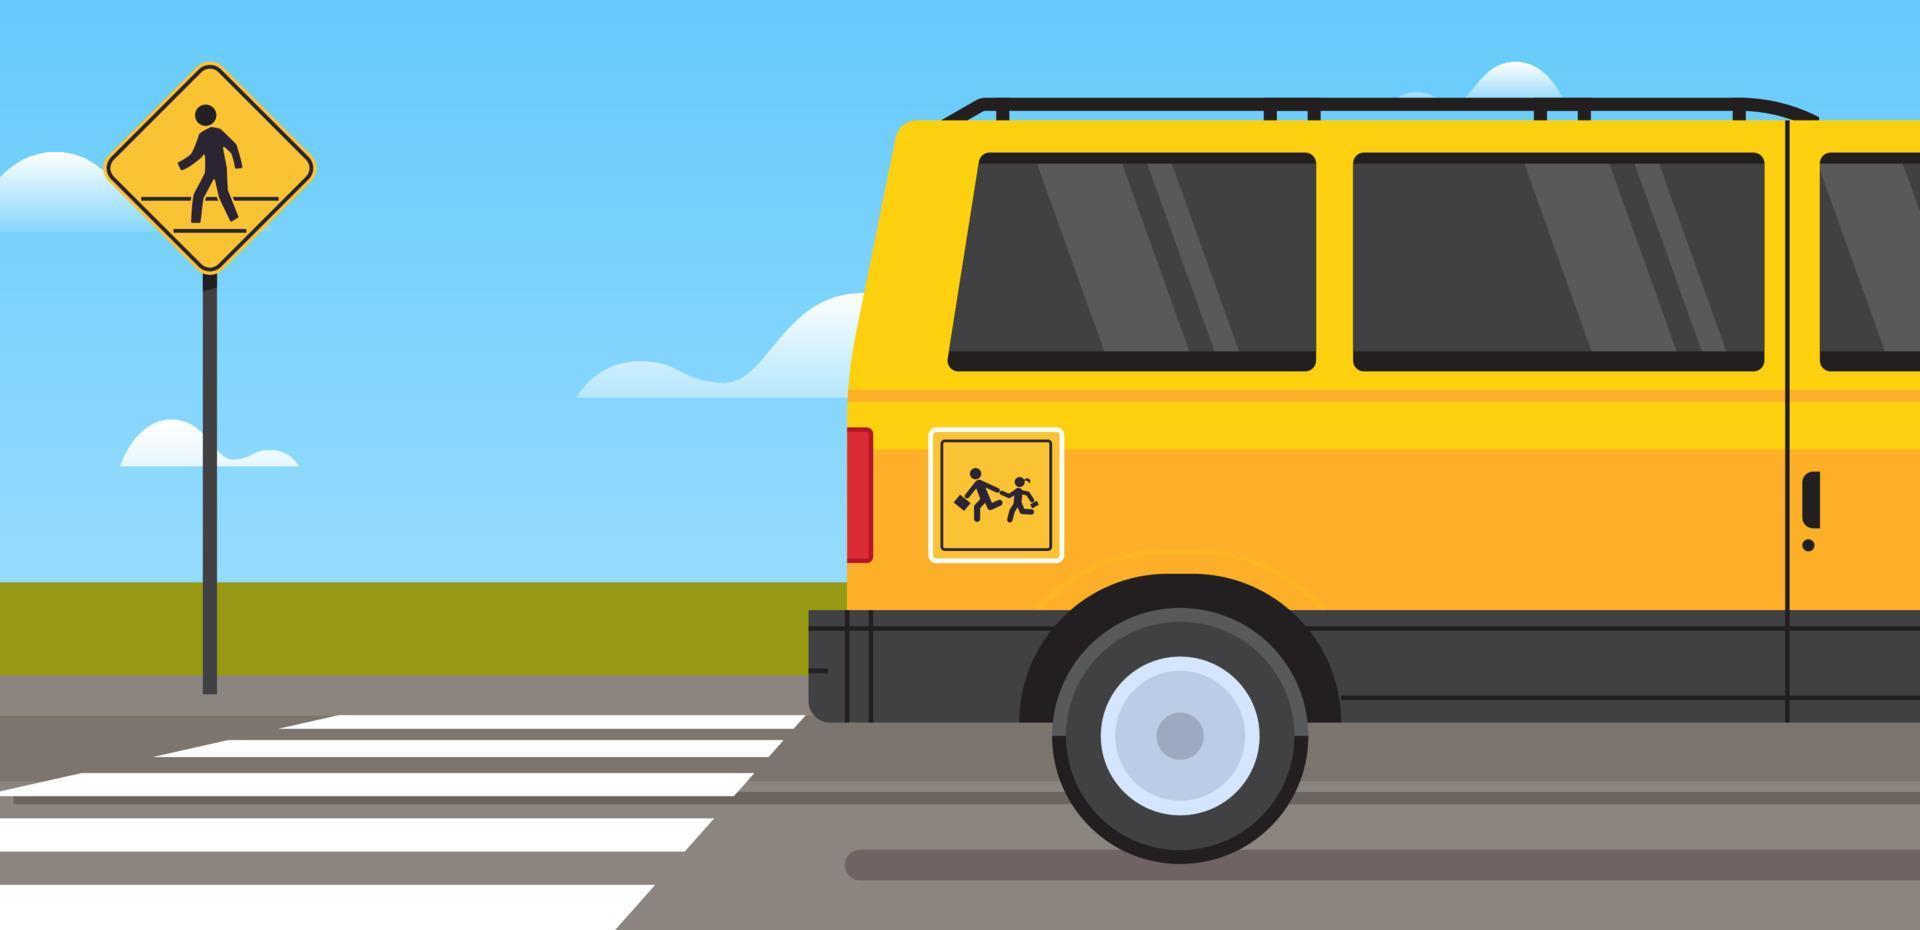 geel school- bus vervoer en terug naar school- leerlingen kinderen vervoer zebrapad concept horizontaal vlak vector illustratie.